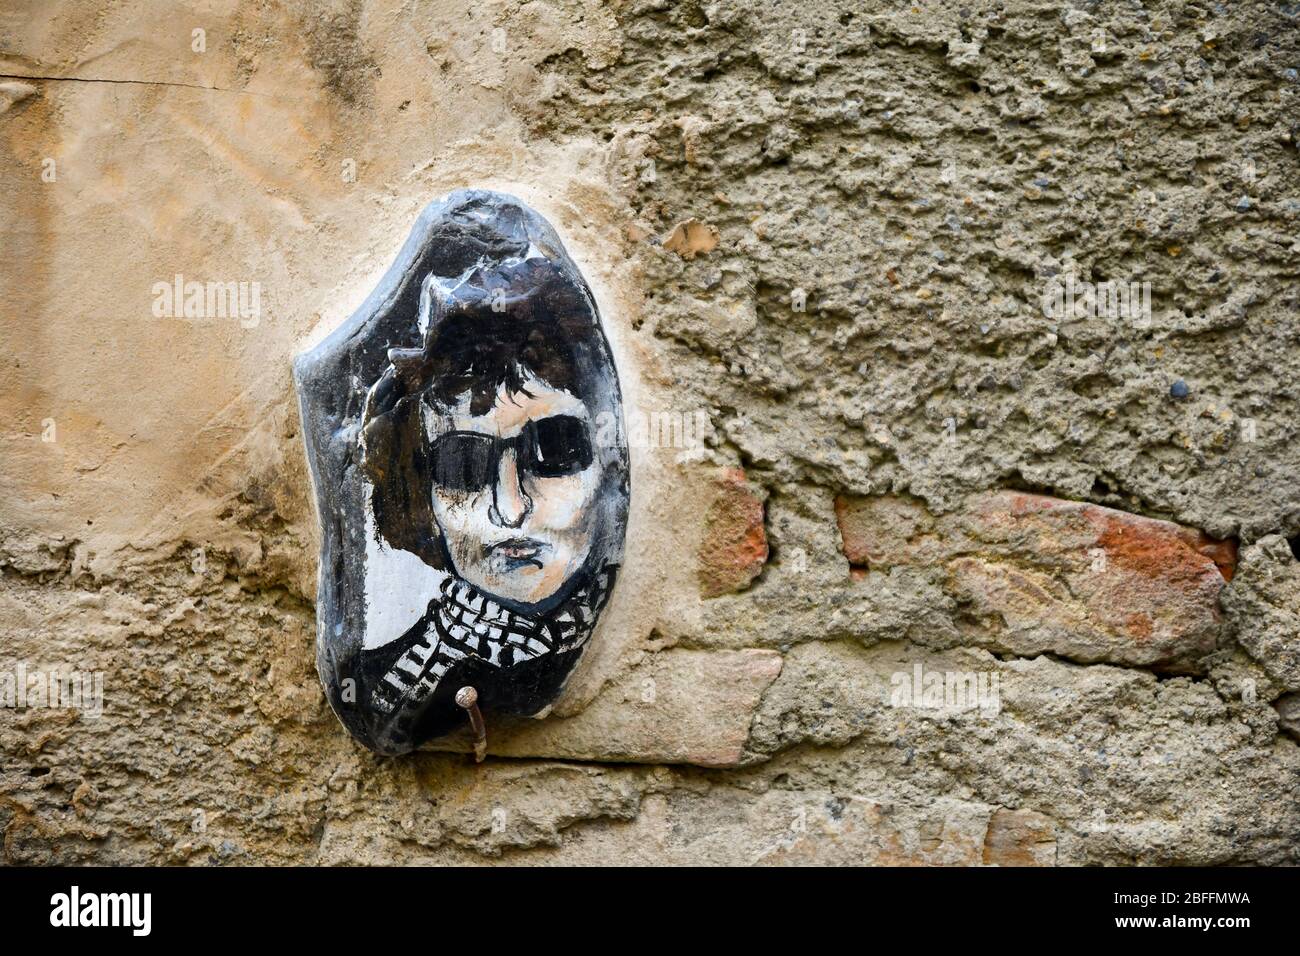 Nahaufnahme eines handbemalten Steins mit dem Porträt von Bob Dylan, dem amerikanischen Singer-Songwriter, auf einer alten Wand, Bussana Vecchia, Imperia, Ligurien, Italien Stockfoto